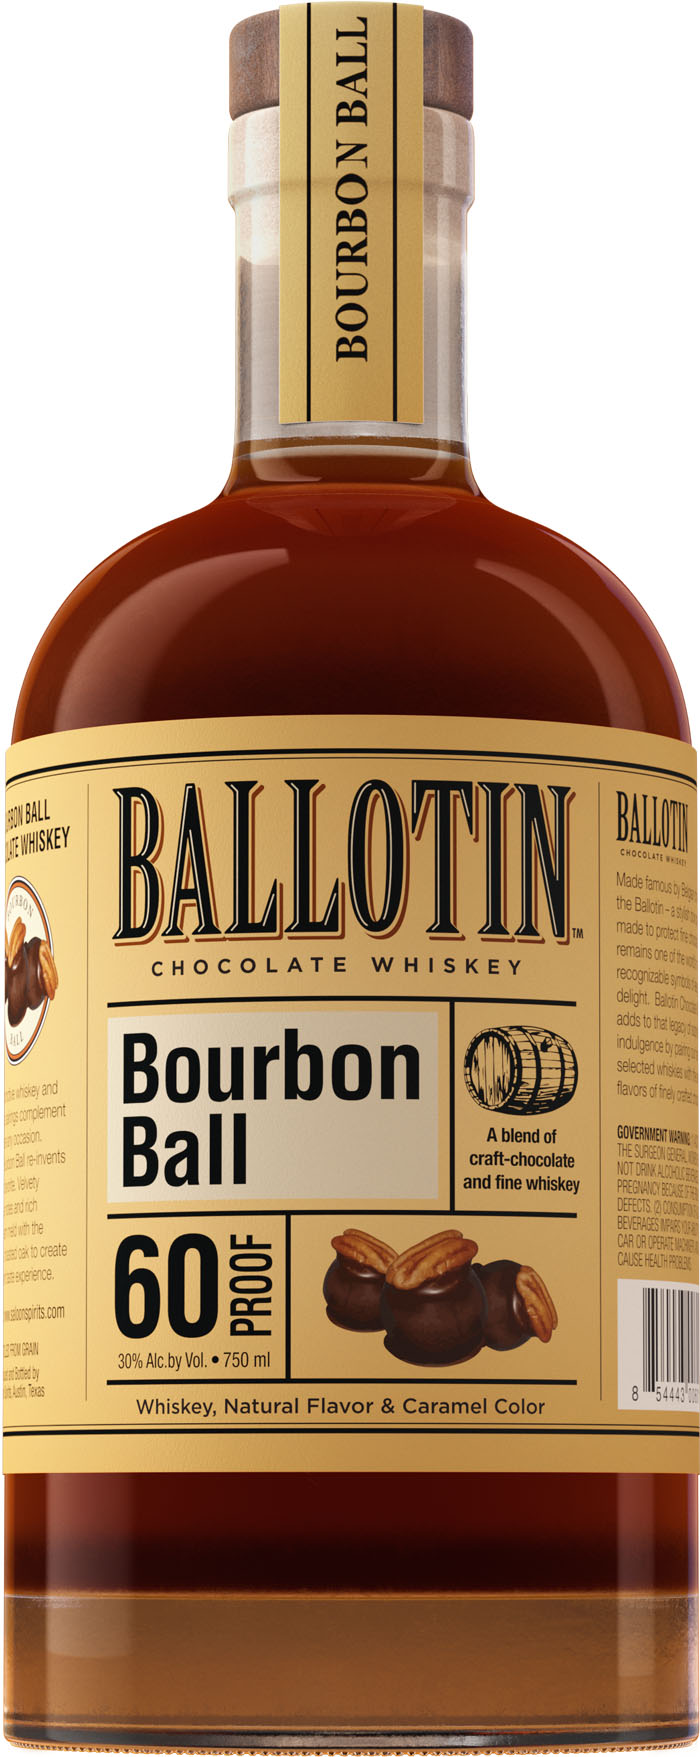 Ballotin Bourbon Ball